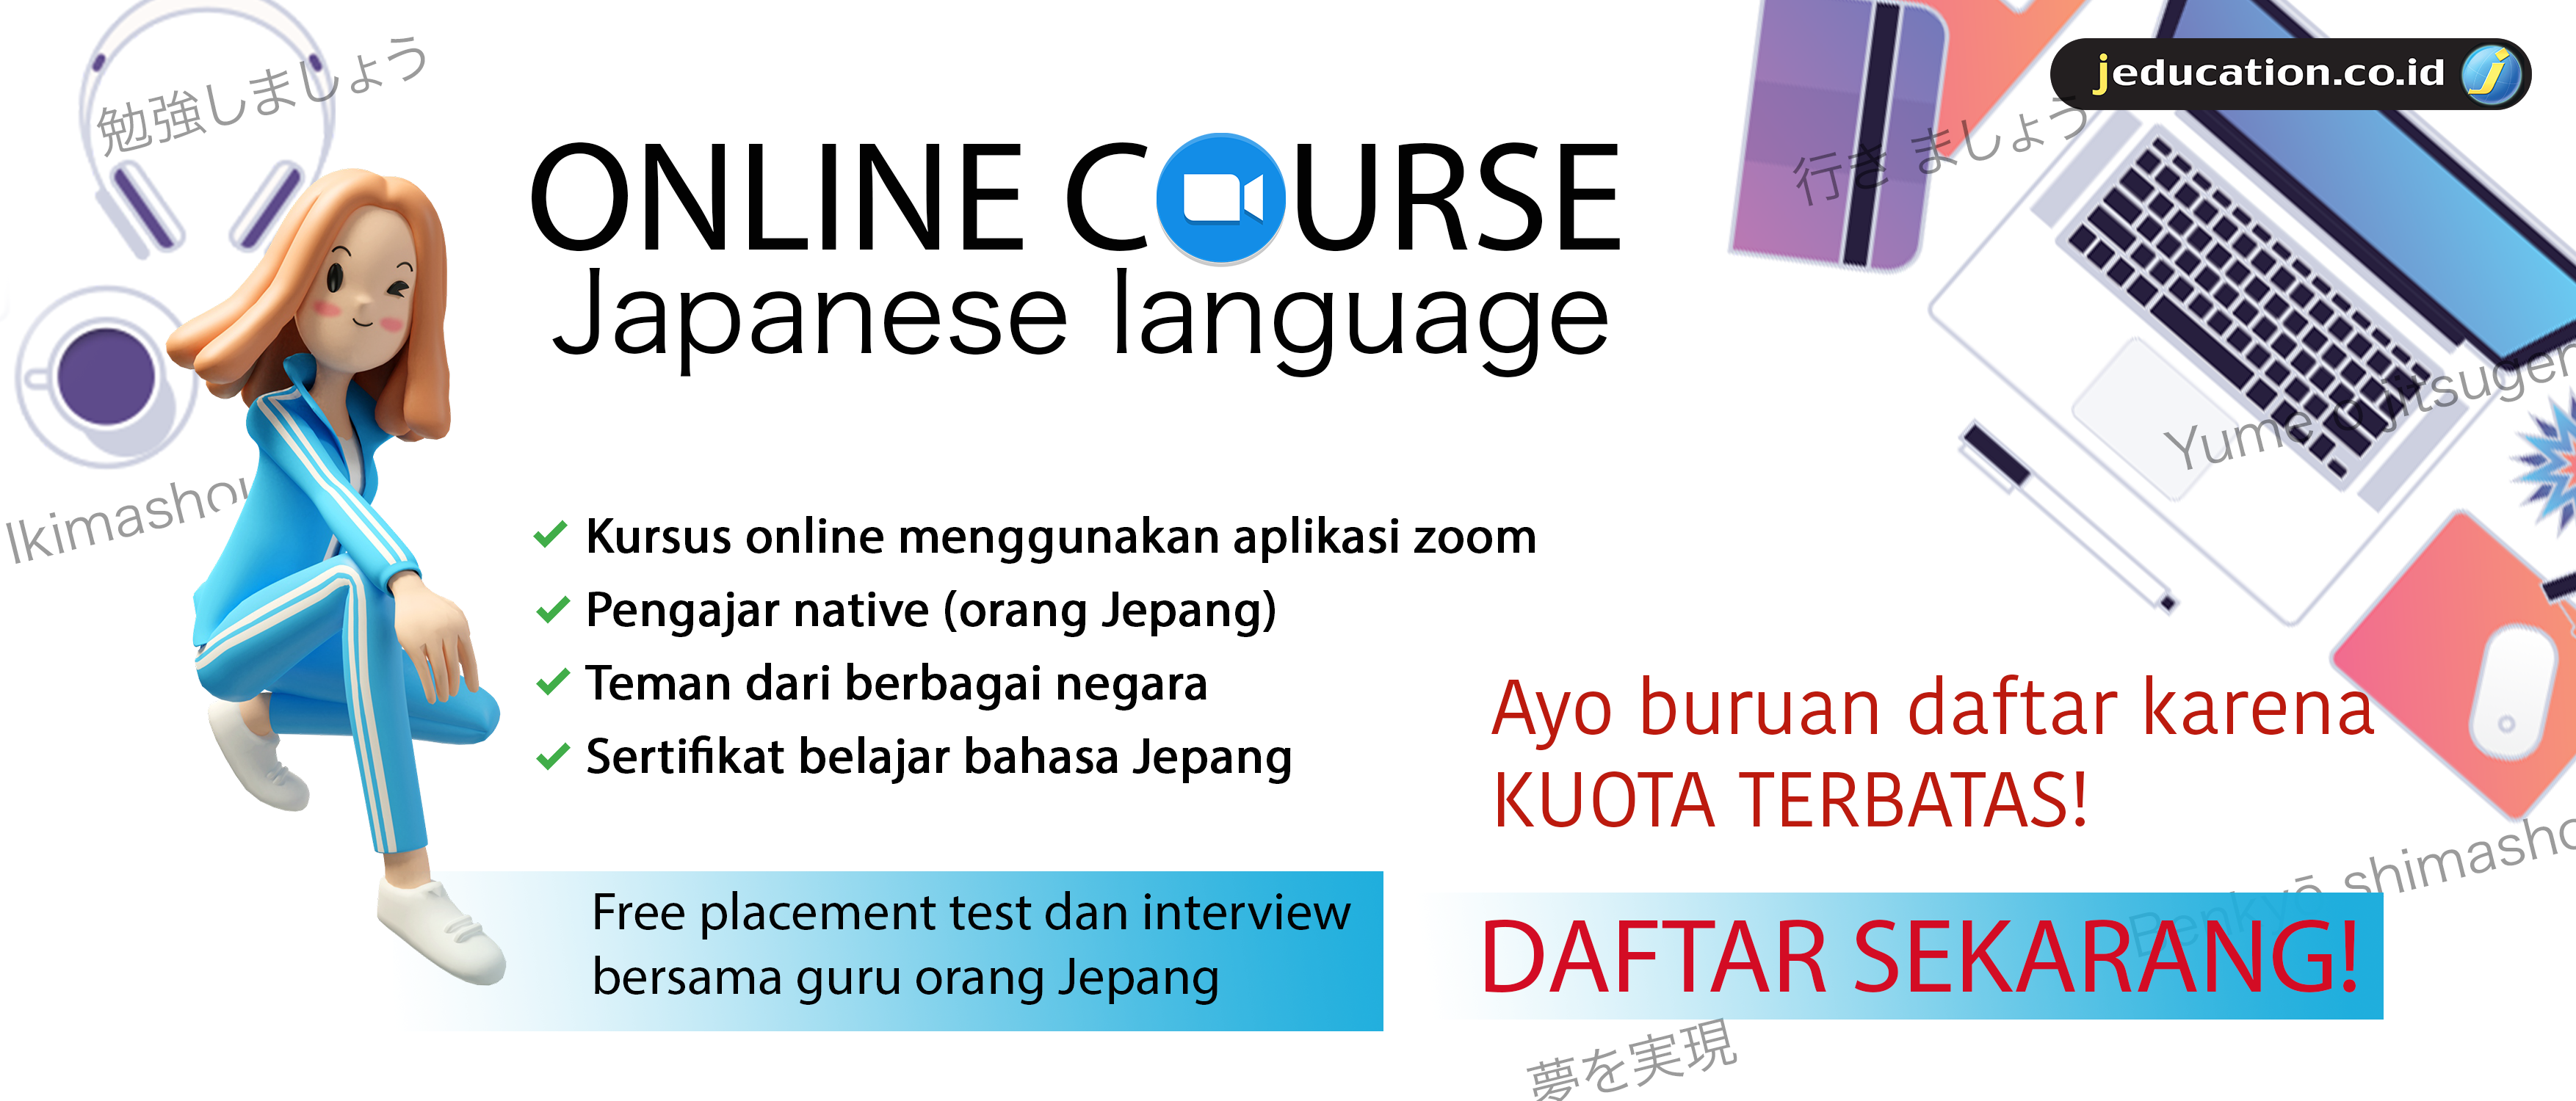 Jeducation Indonesia Sekolah Di Jepang Belajar Bahasa Jepang